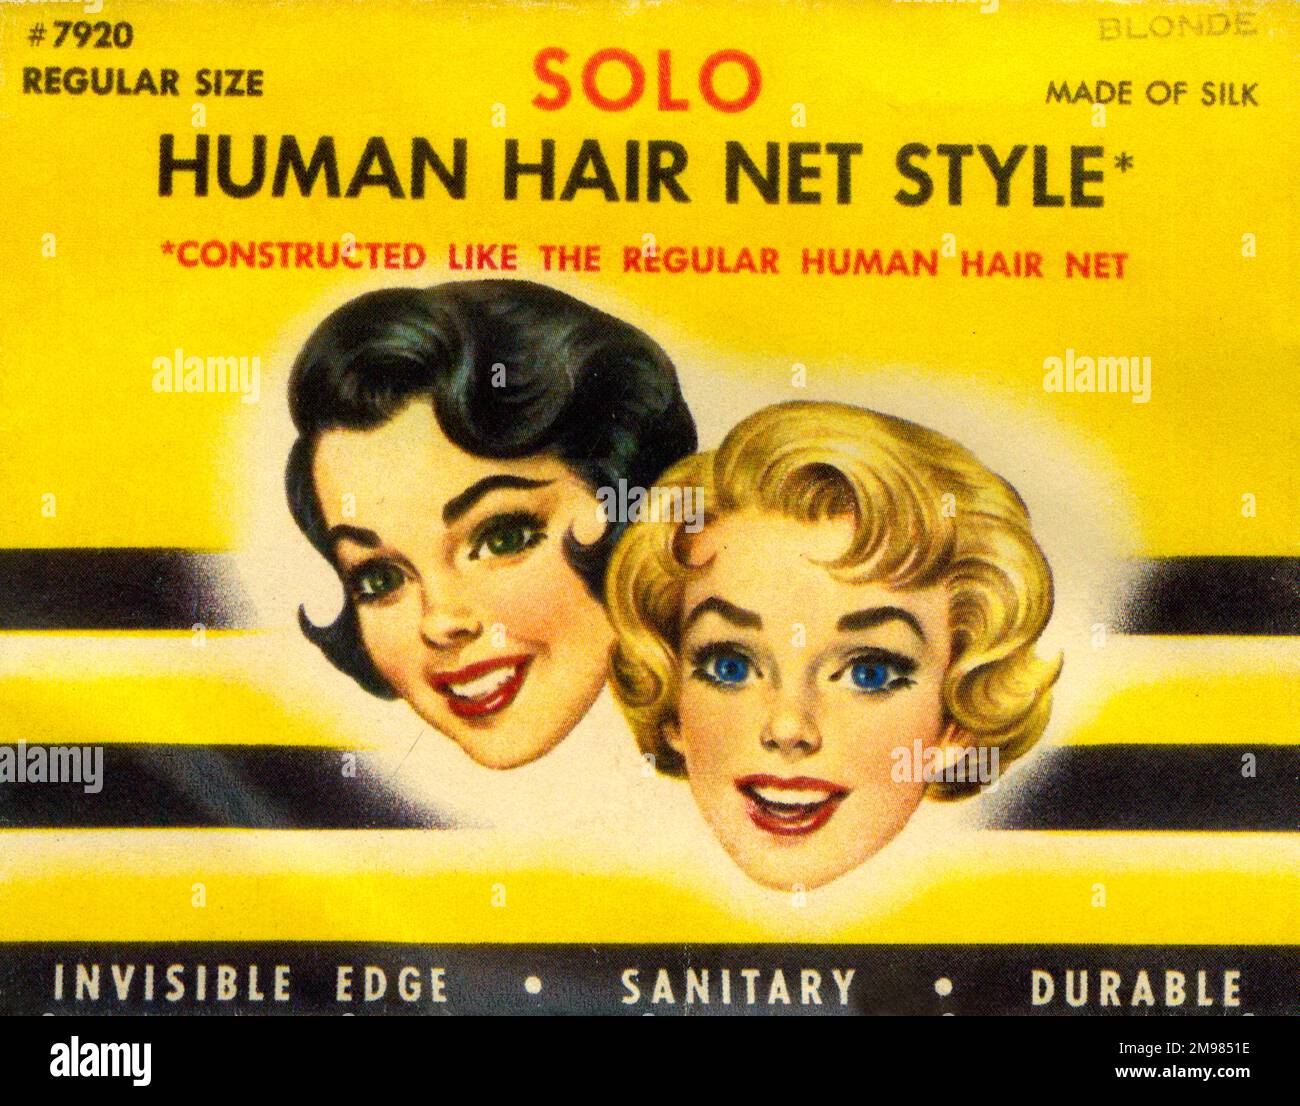 Vintage Hairnet Packaging - Solo Human Hair Net style - taille normale en blond - fait de soie - arête invisible, sanitaire et durable. Banque D'Images